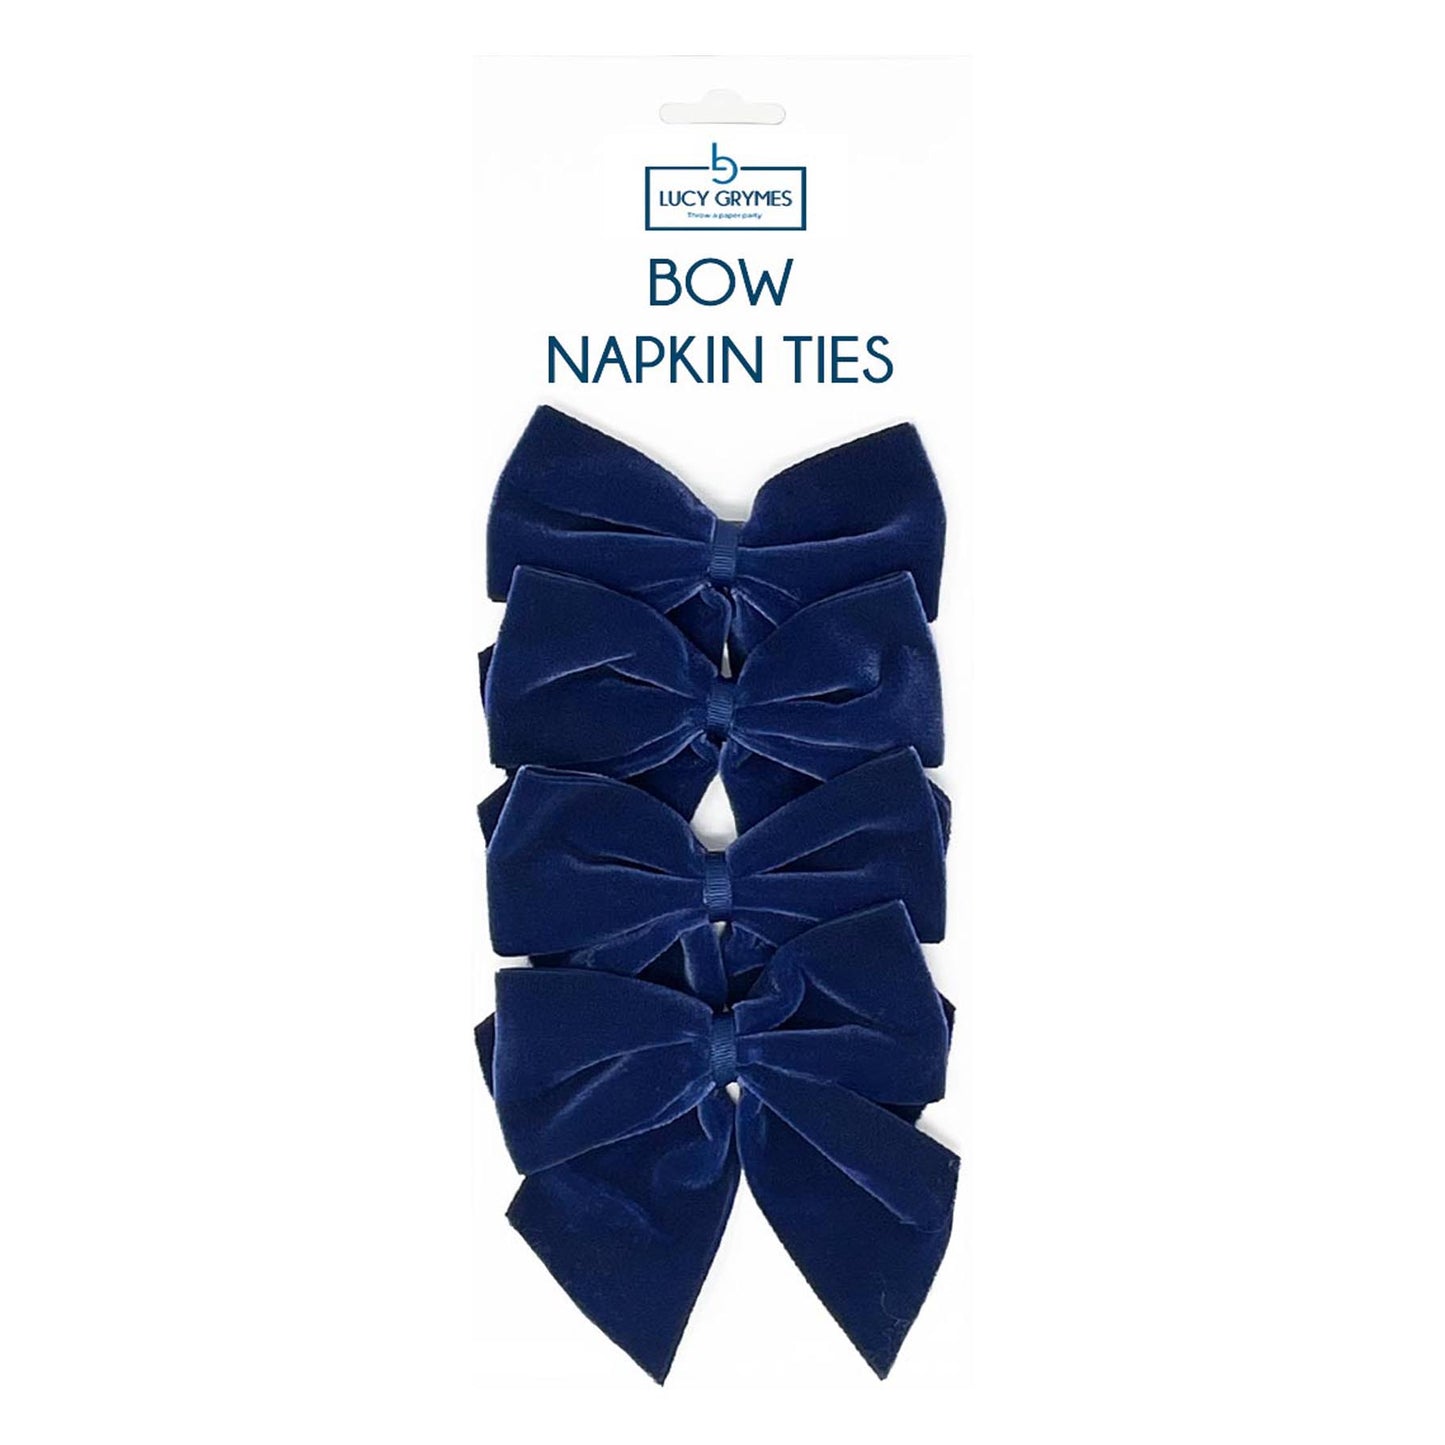 *NEW* Navy Bow Napkin Ties